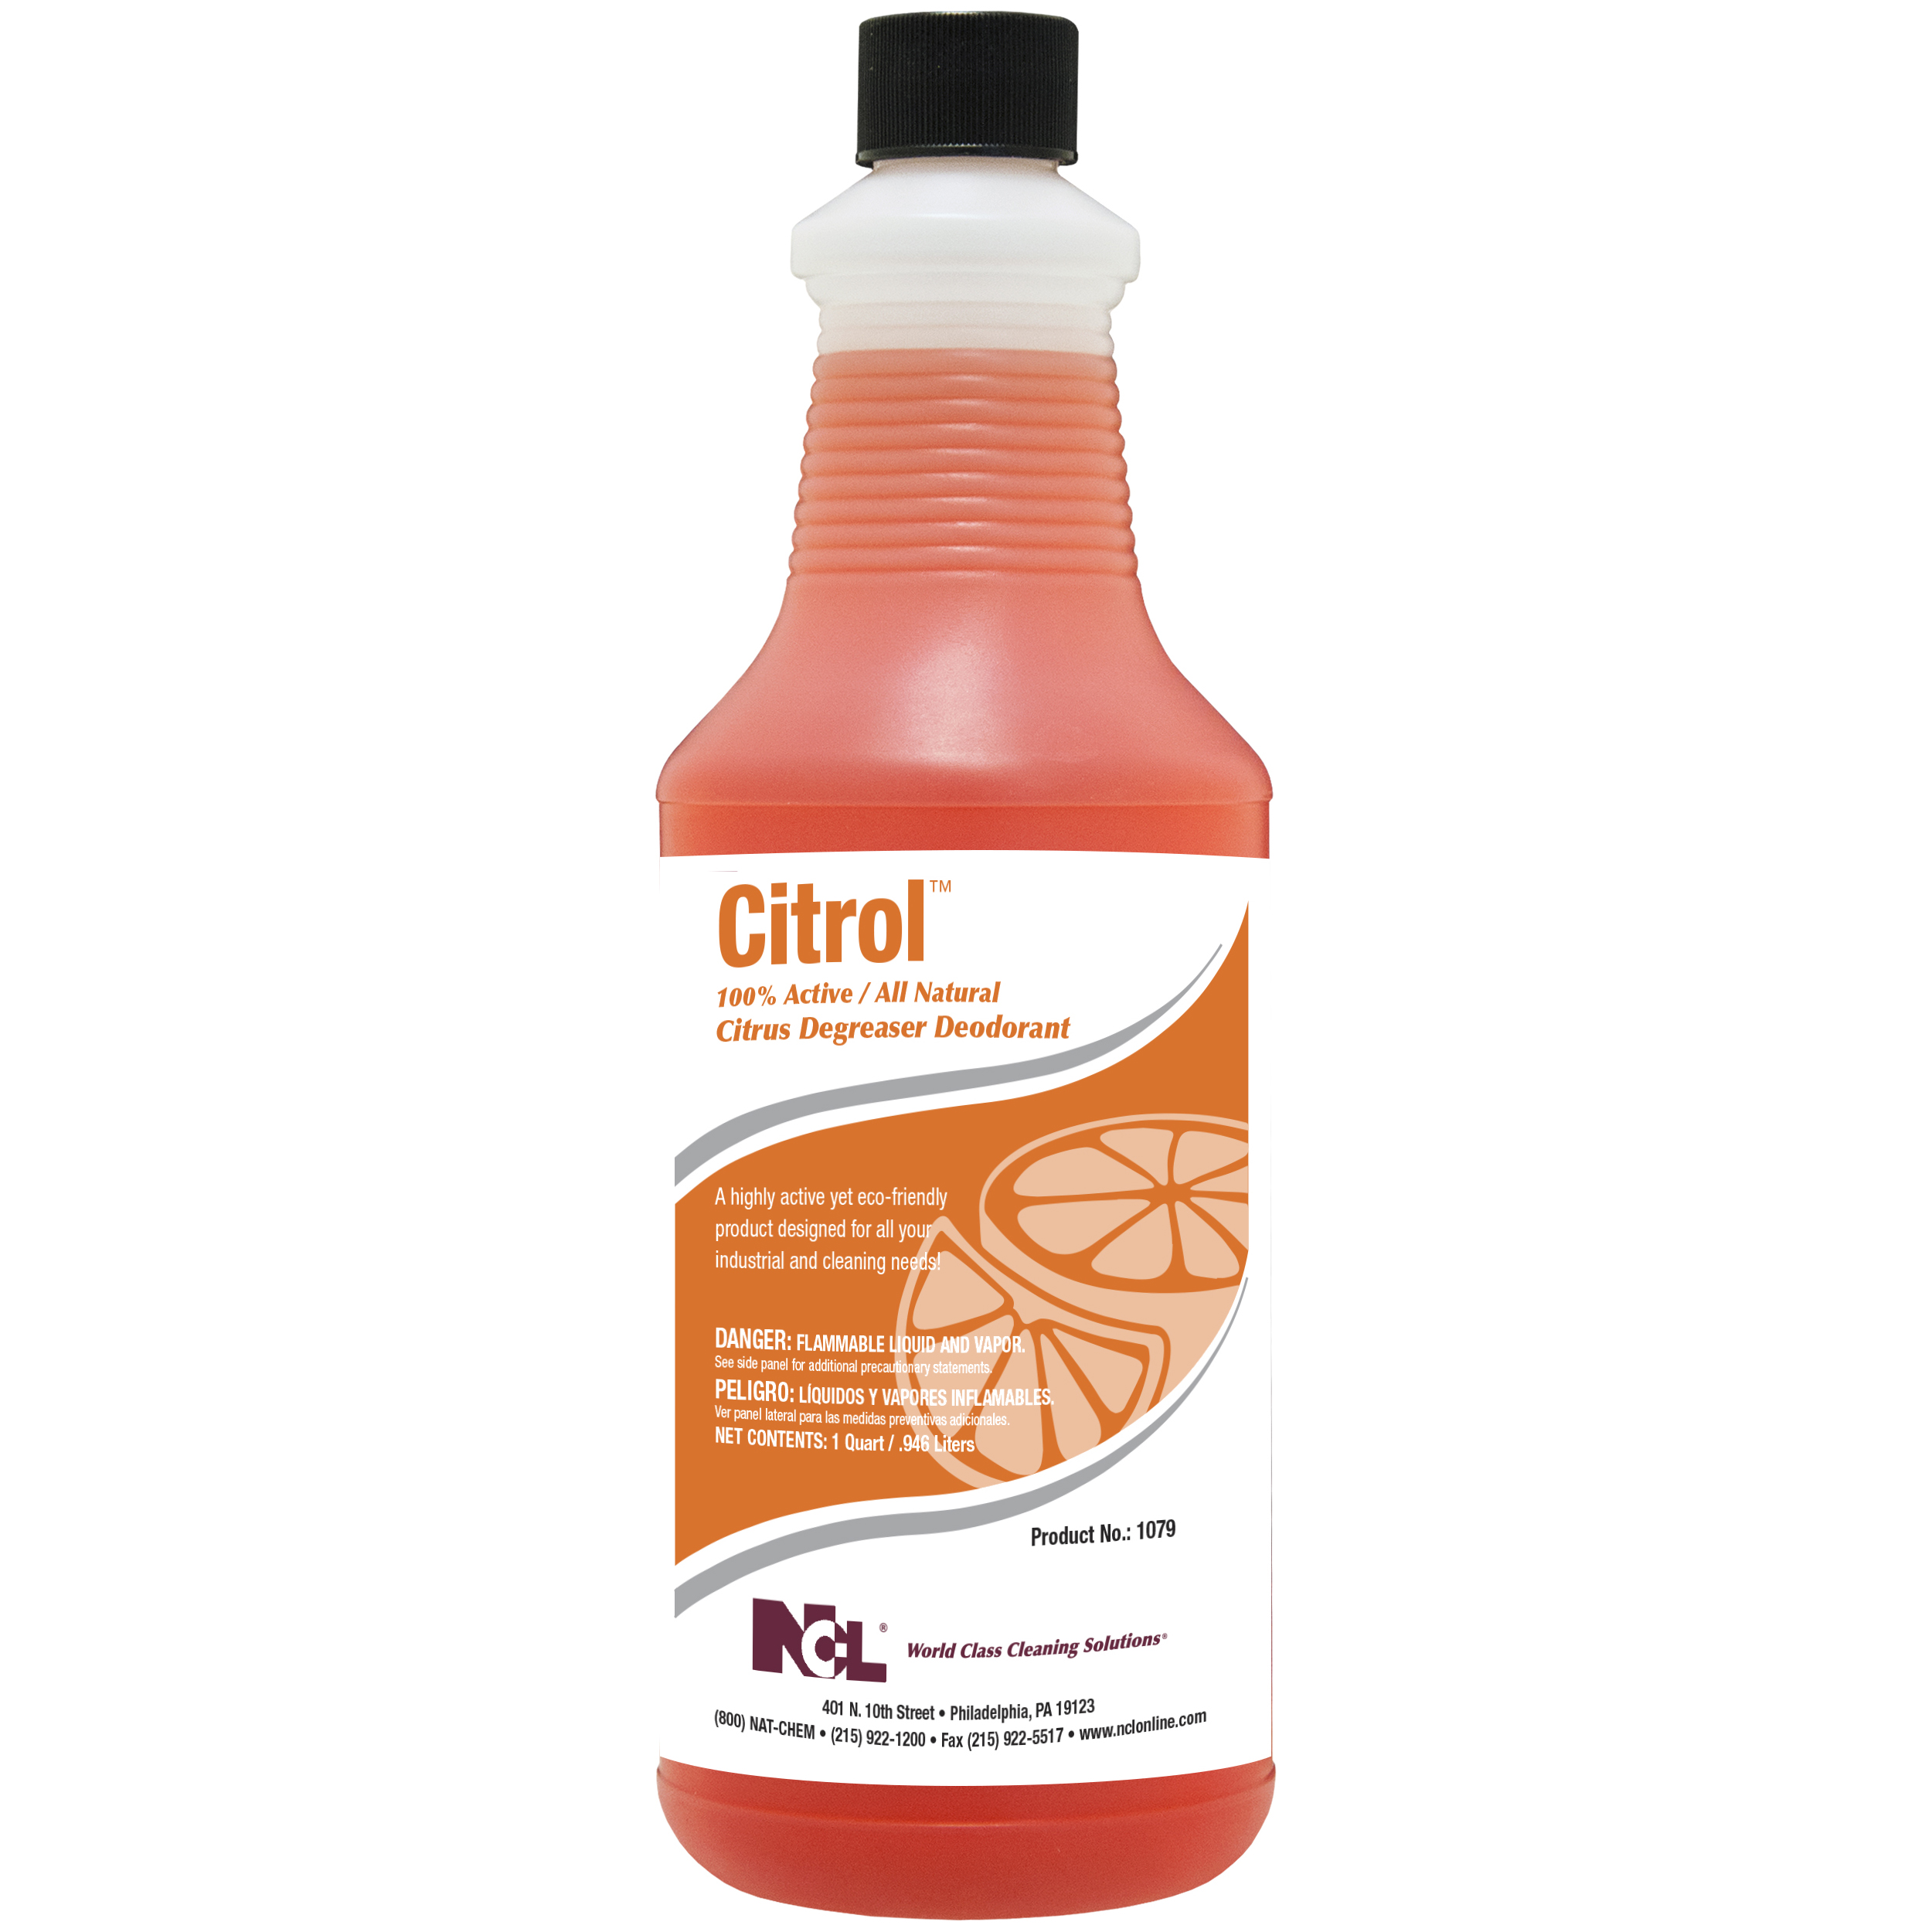  CITROL 100% Active / All Natural Citrus Degreaser Deodorant 12/32 oz (1 Qt.) Case (NCL1079-37) 